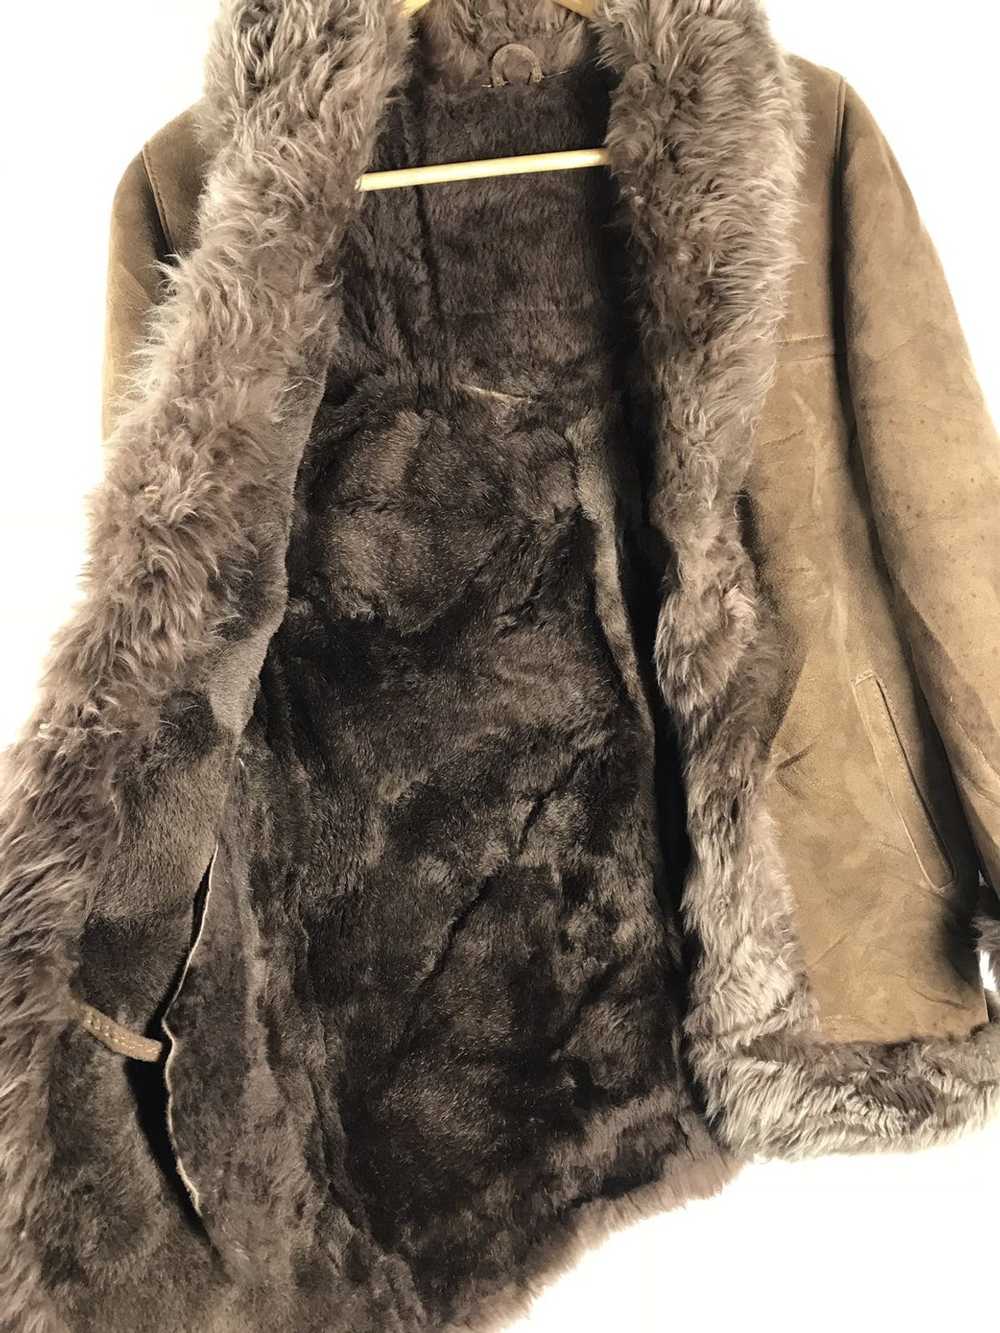 Japanese Brand × Leather Jacket × Mink Fur Coat H… - image 7